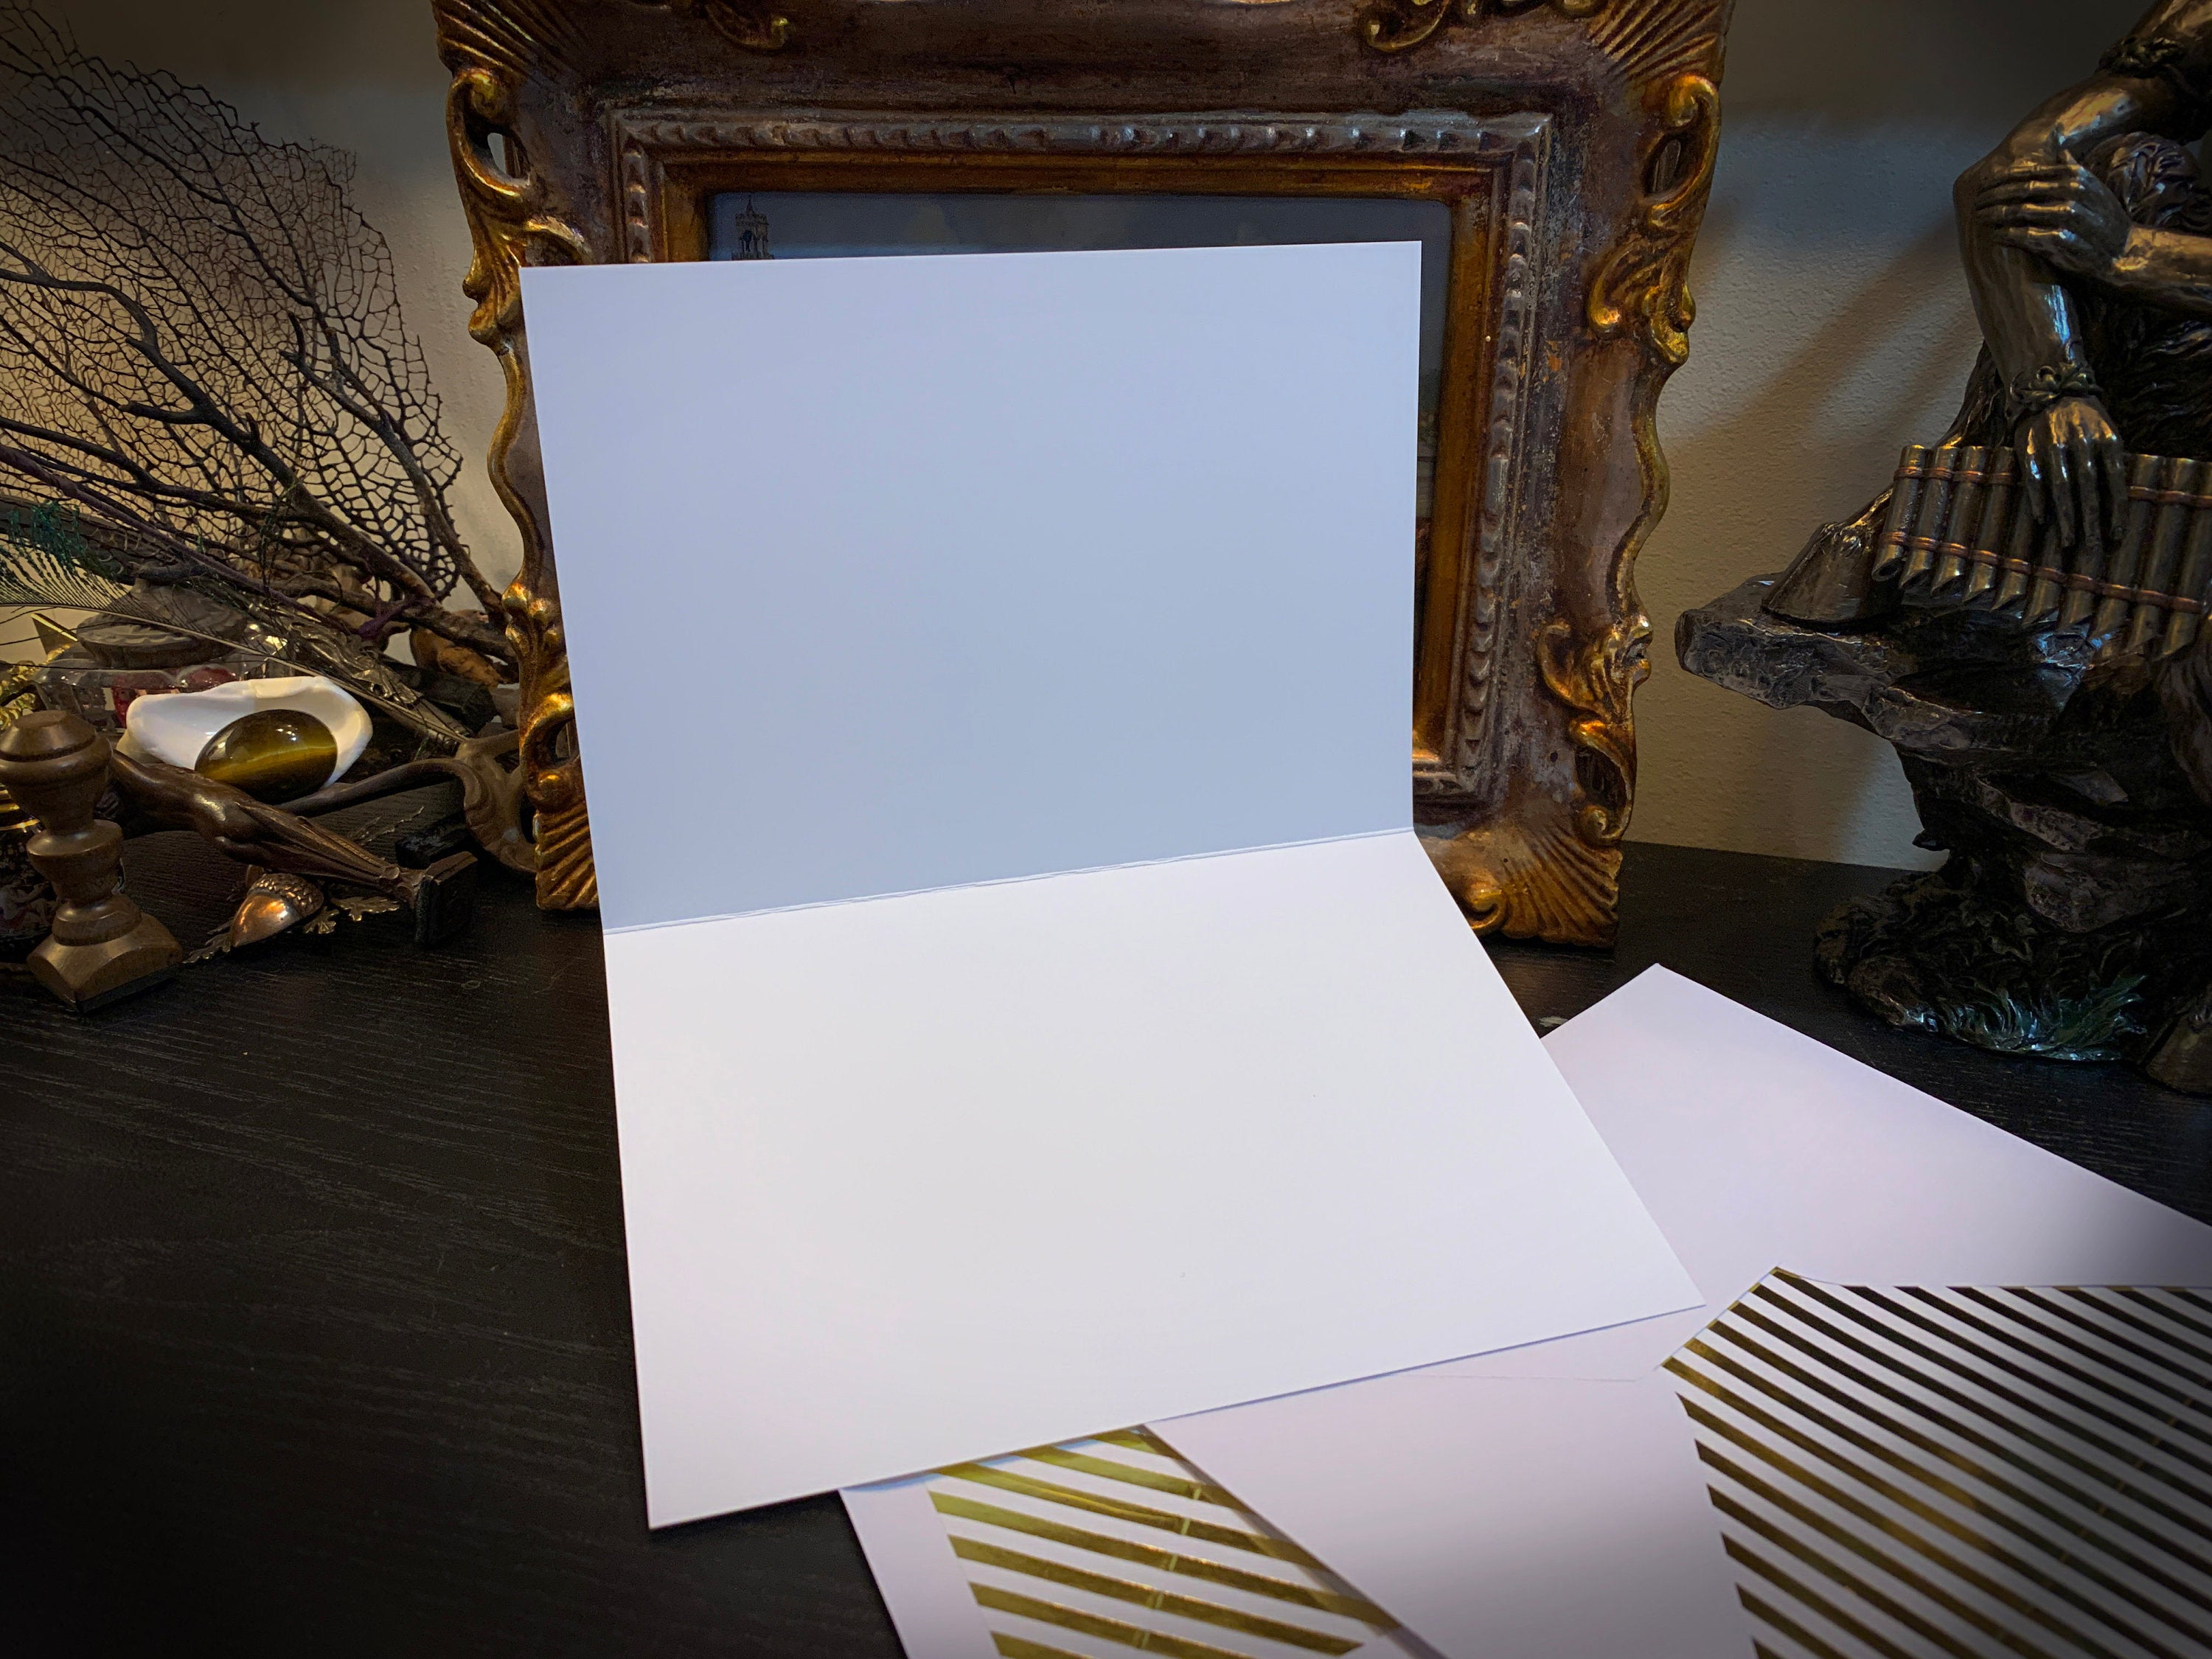 Flammarion, Celestial Greeting Card with Elegant Striped Gold Foil Envelope, 1 Card/Envelope